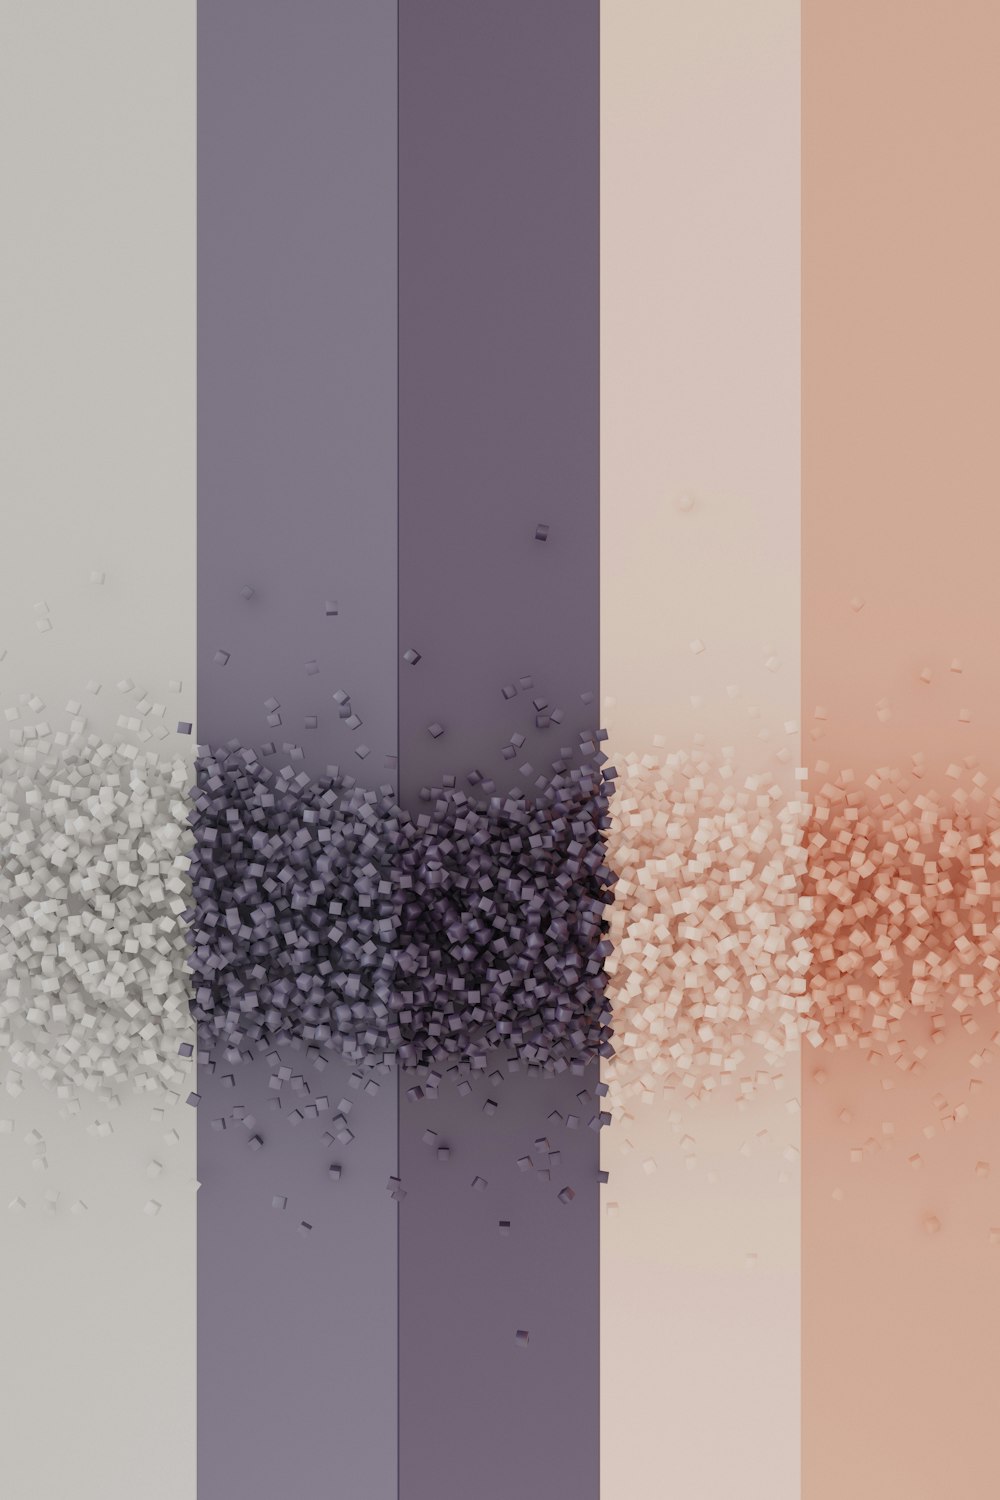 Un grupo de líneas de diferentes colores con pequeñas burbujas